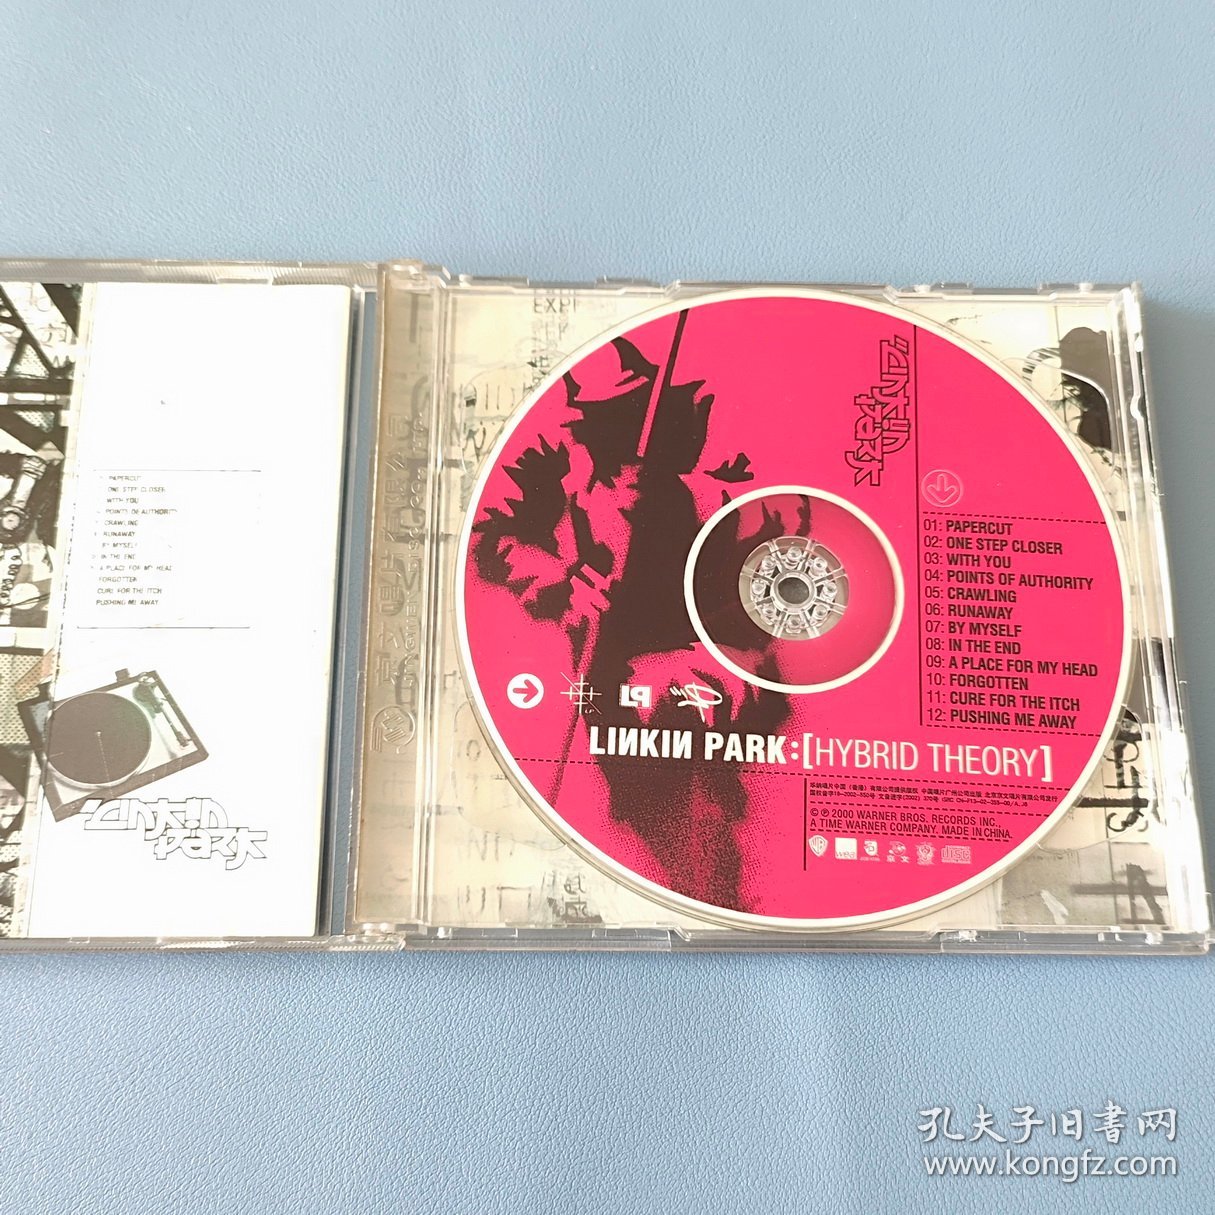 华纳原版双CD 美国摇滚乐队 林肯公园《混合理论 Hybrid Theory》Linkin Park 中唱京文国内引进正版